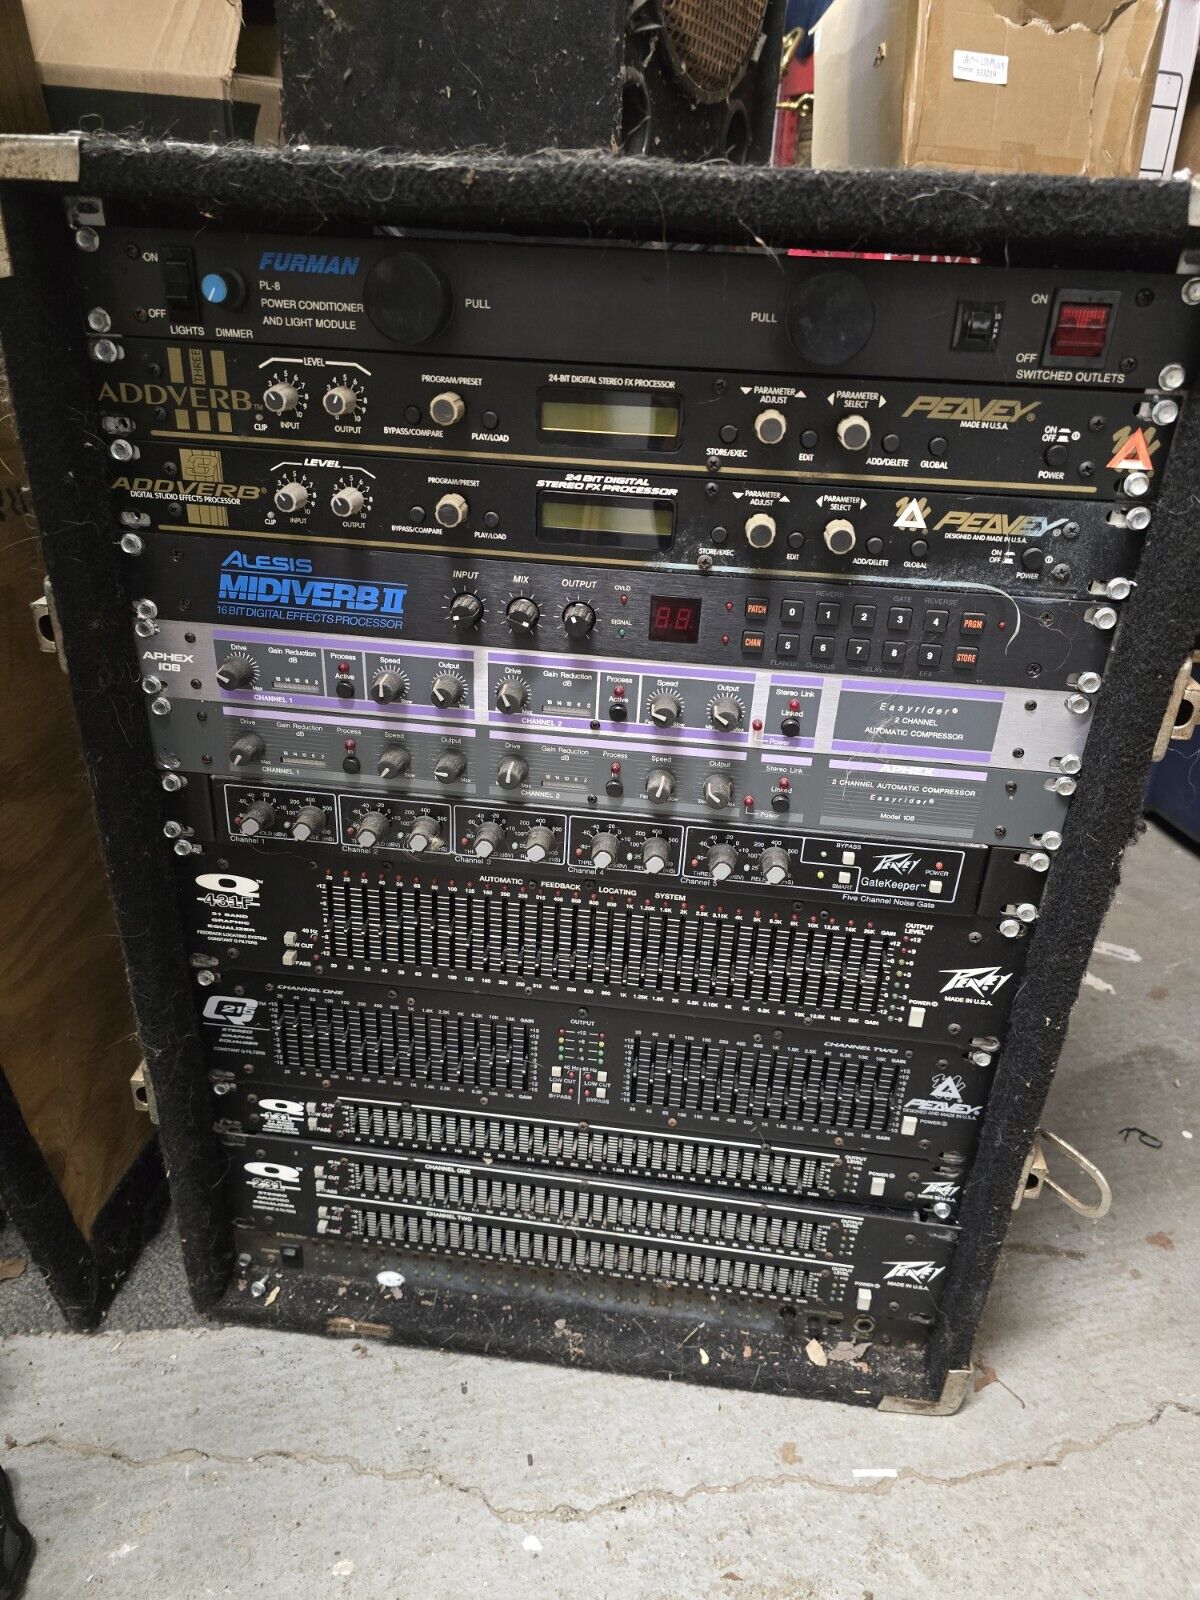 Full Audio Studio Sound Equipment Rack Cabinet - Furman, Addverdb, Aphex + More